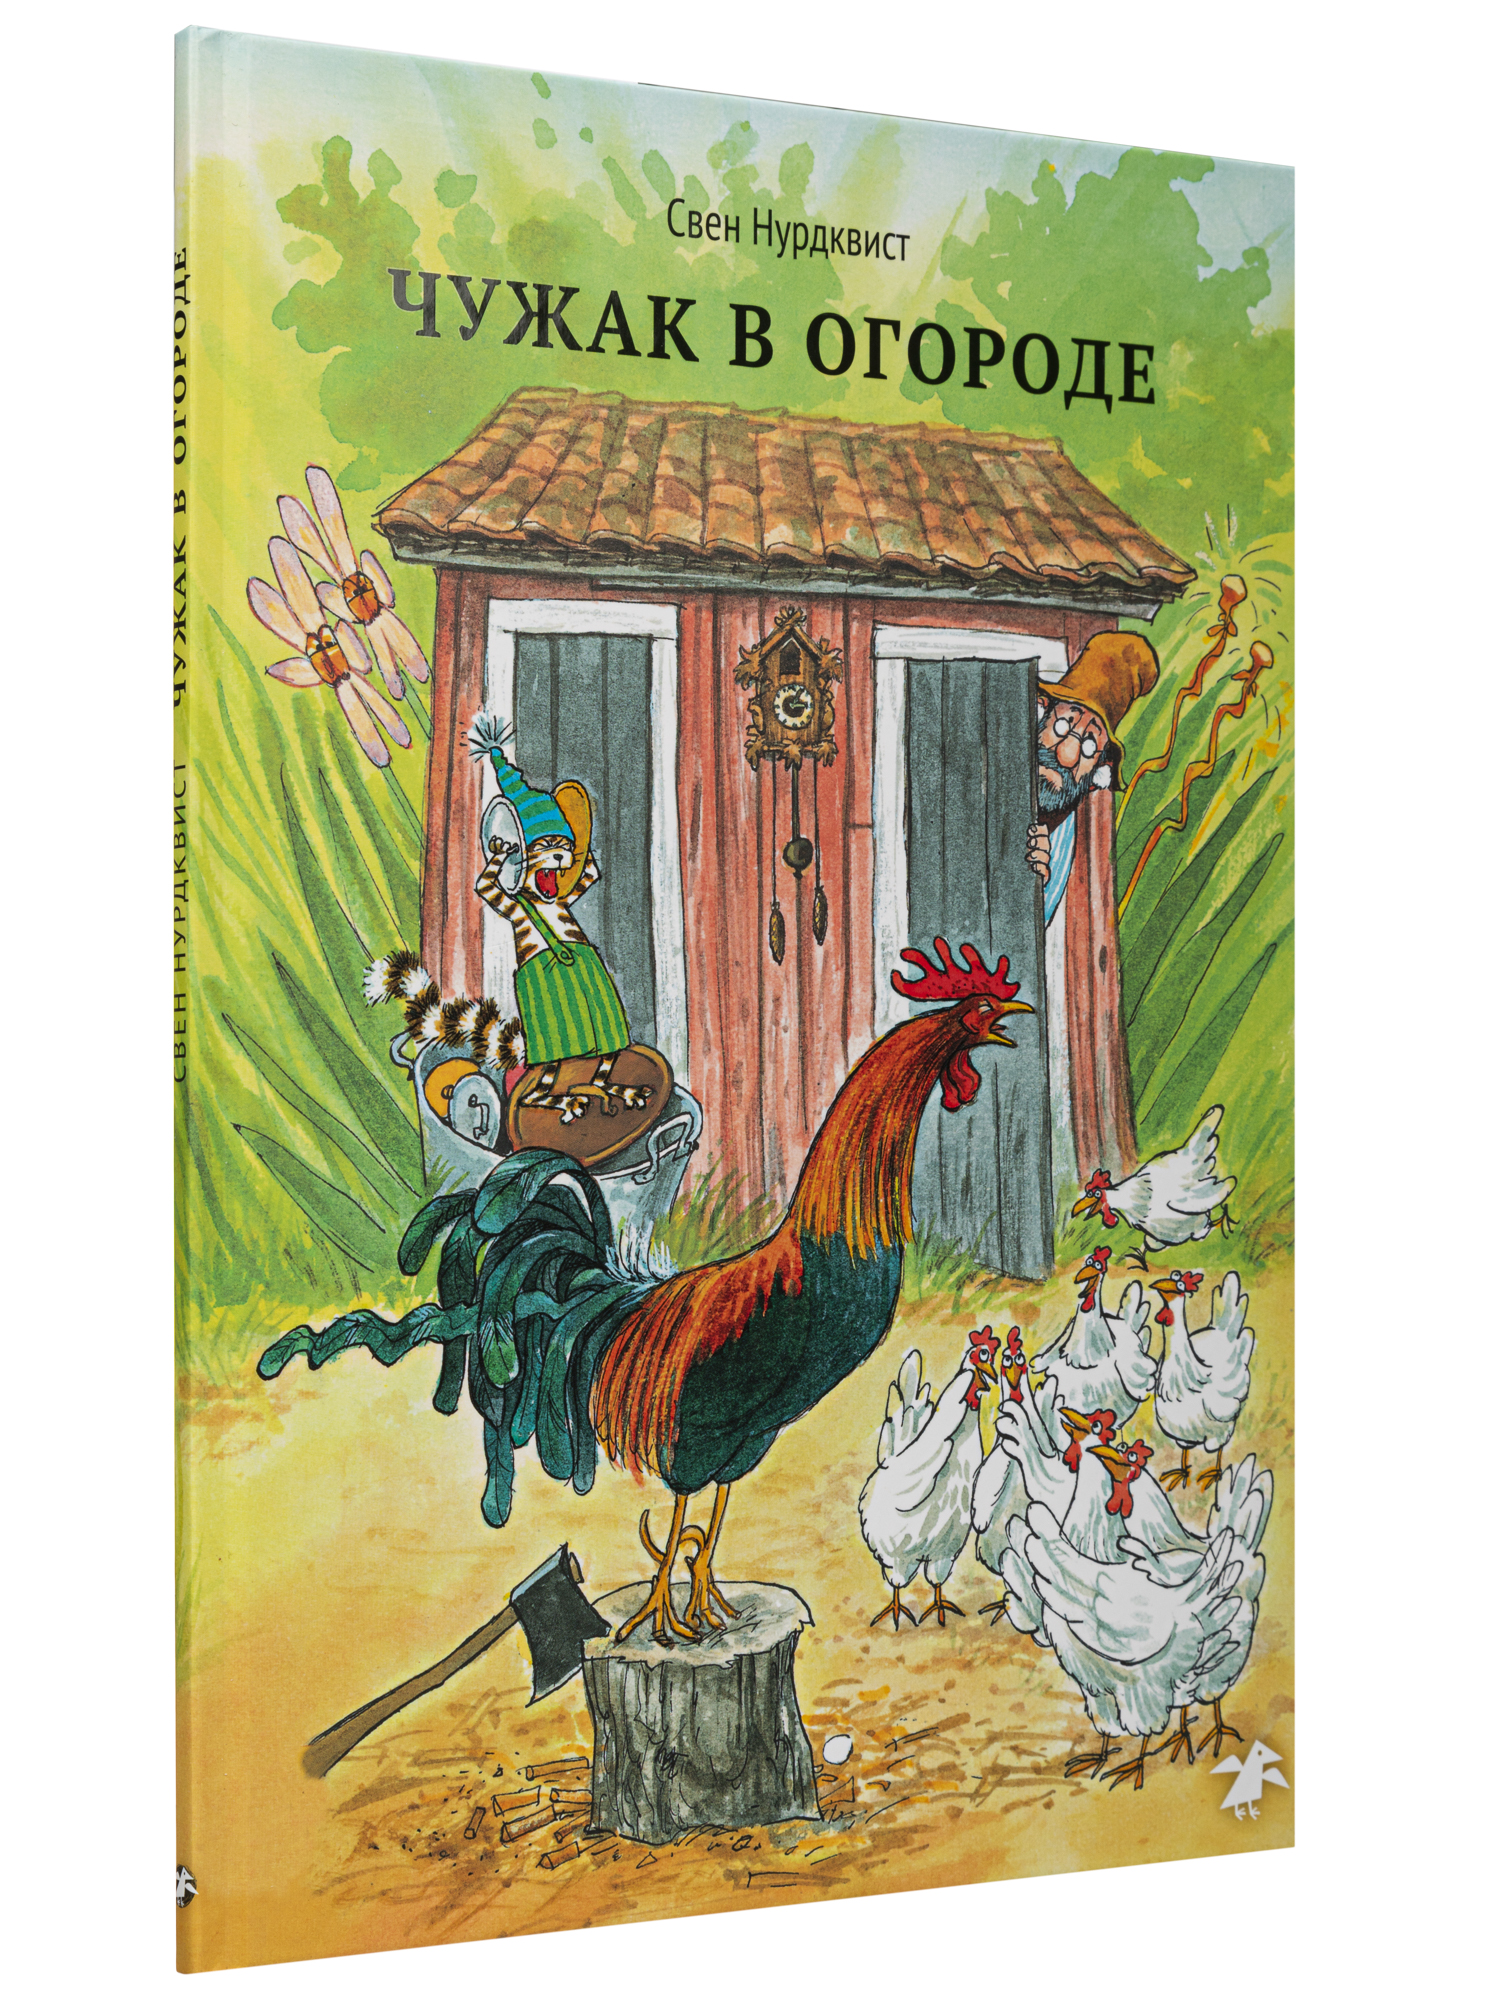 Книга ALBUS CORVUS Чужак в огороде - фото 2